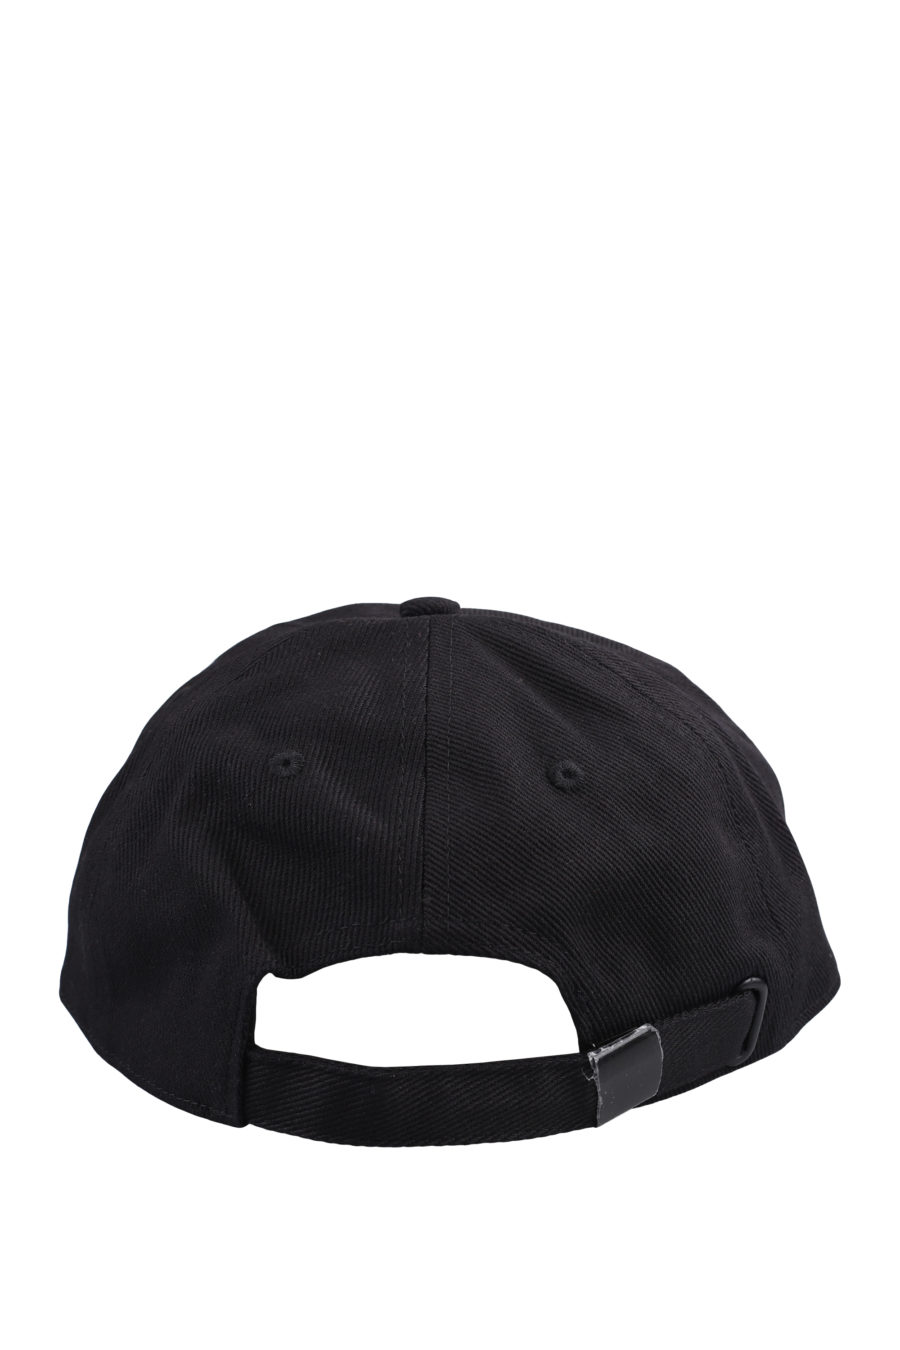 Gorra negra con logo bordado blanco - IMG 0922